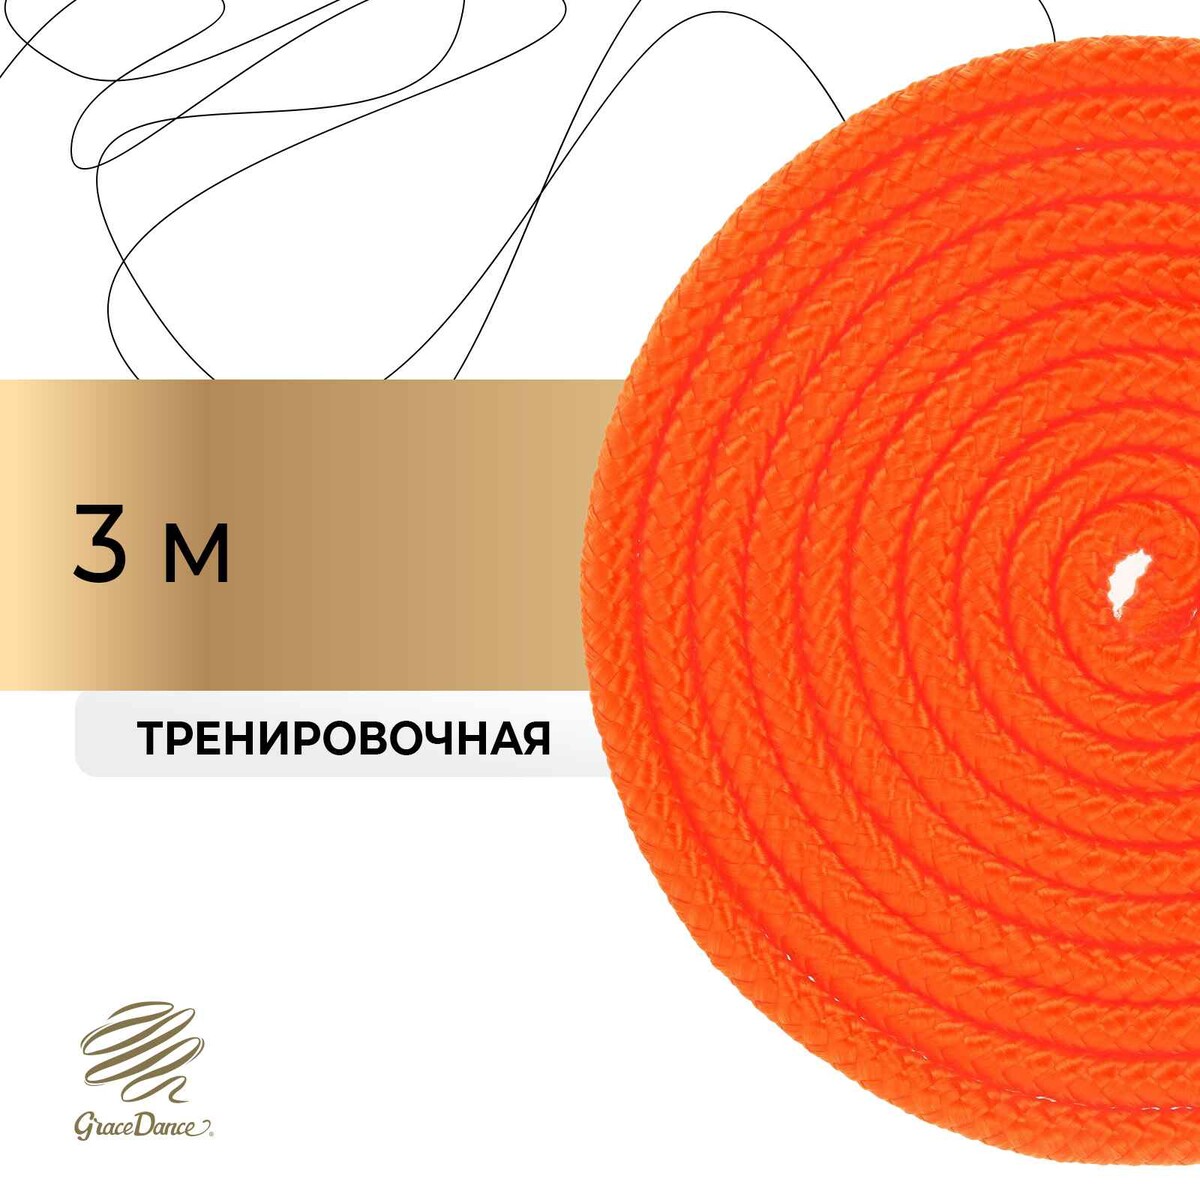 Скакалка для художественной гимнастики grace dance, 3 м, цвет оранжевый скакалка скоростная 300см sportex трос металл в пвх d34485 4 оранжевый